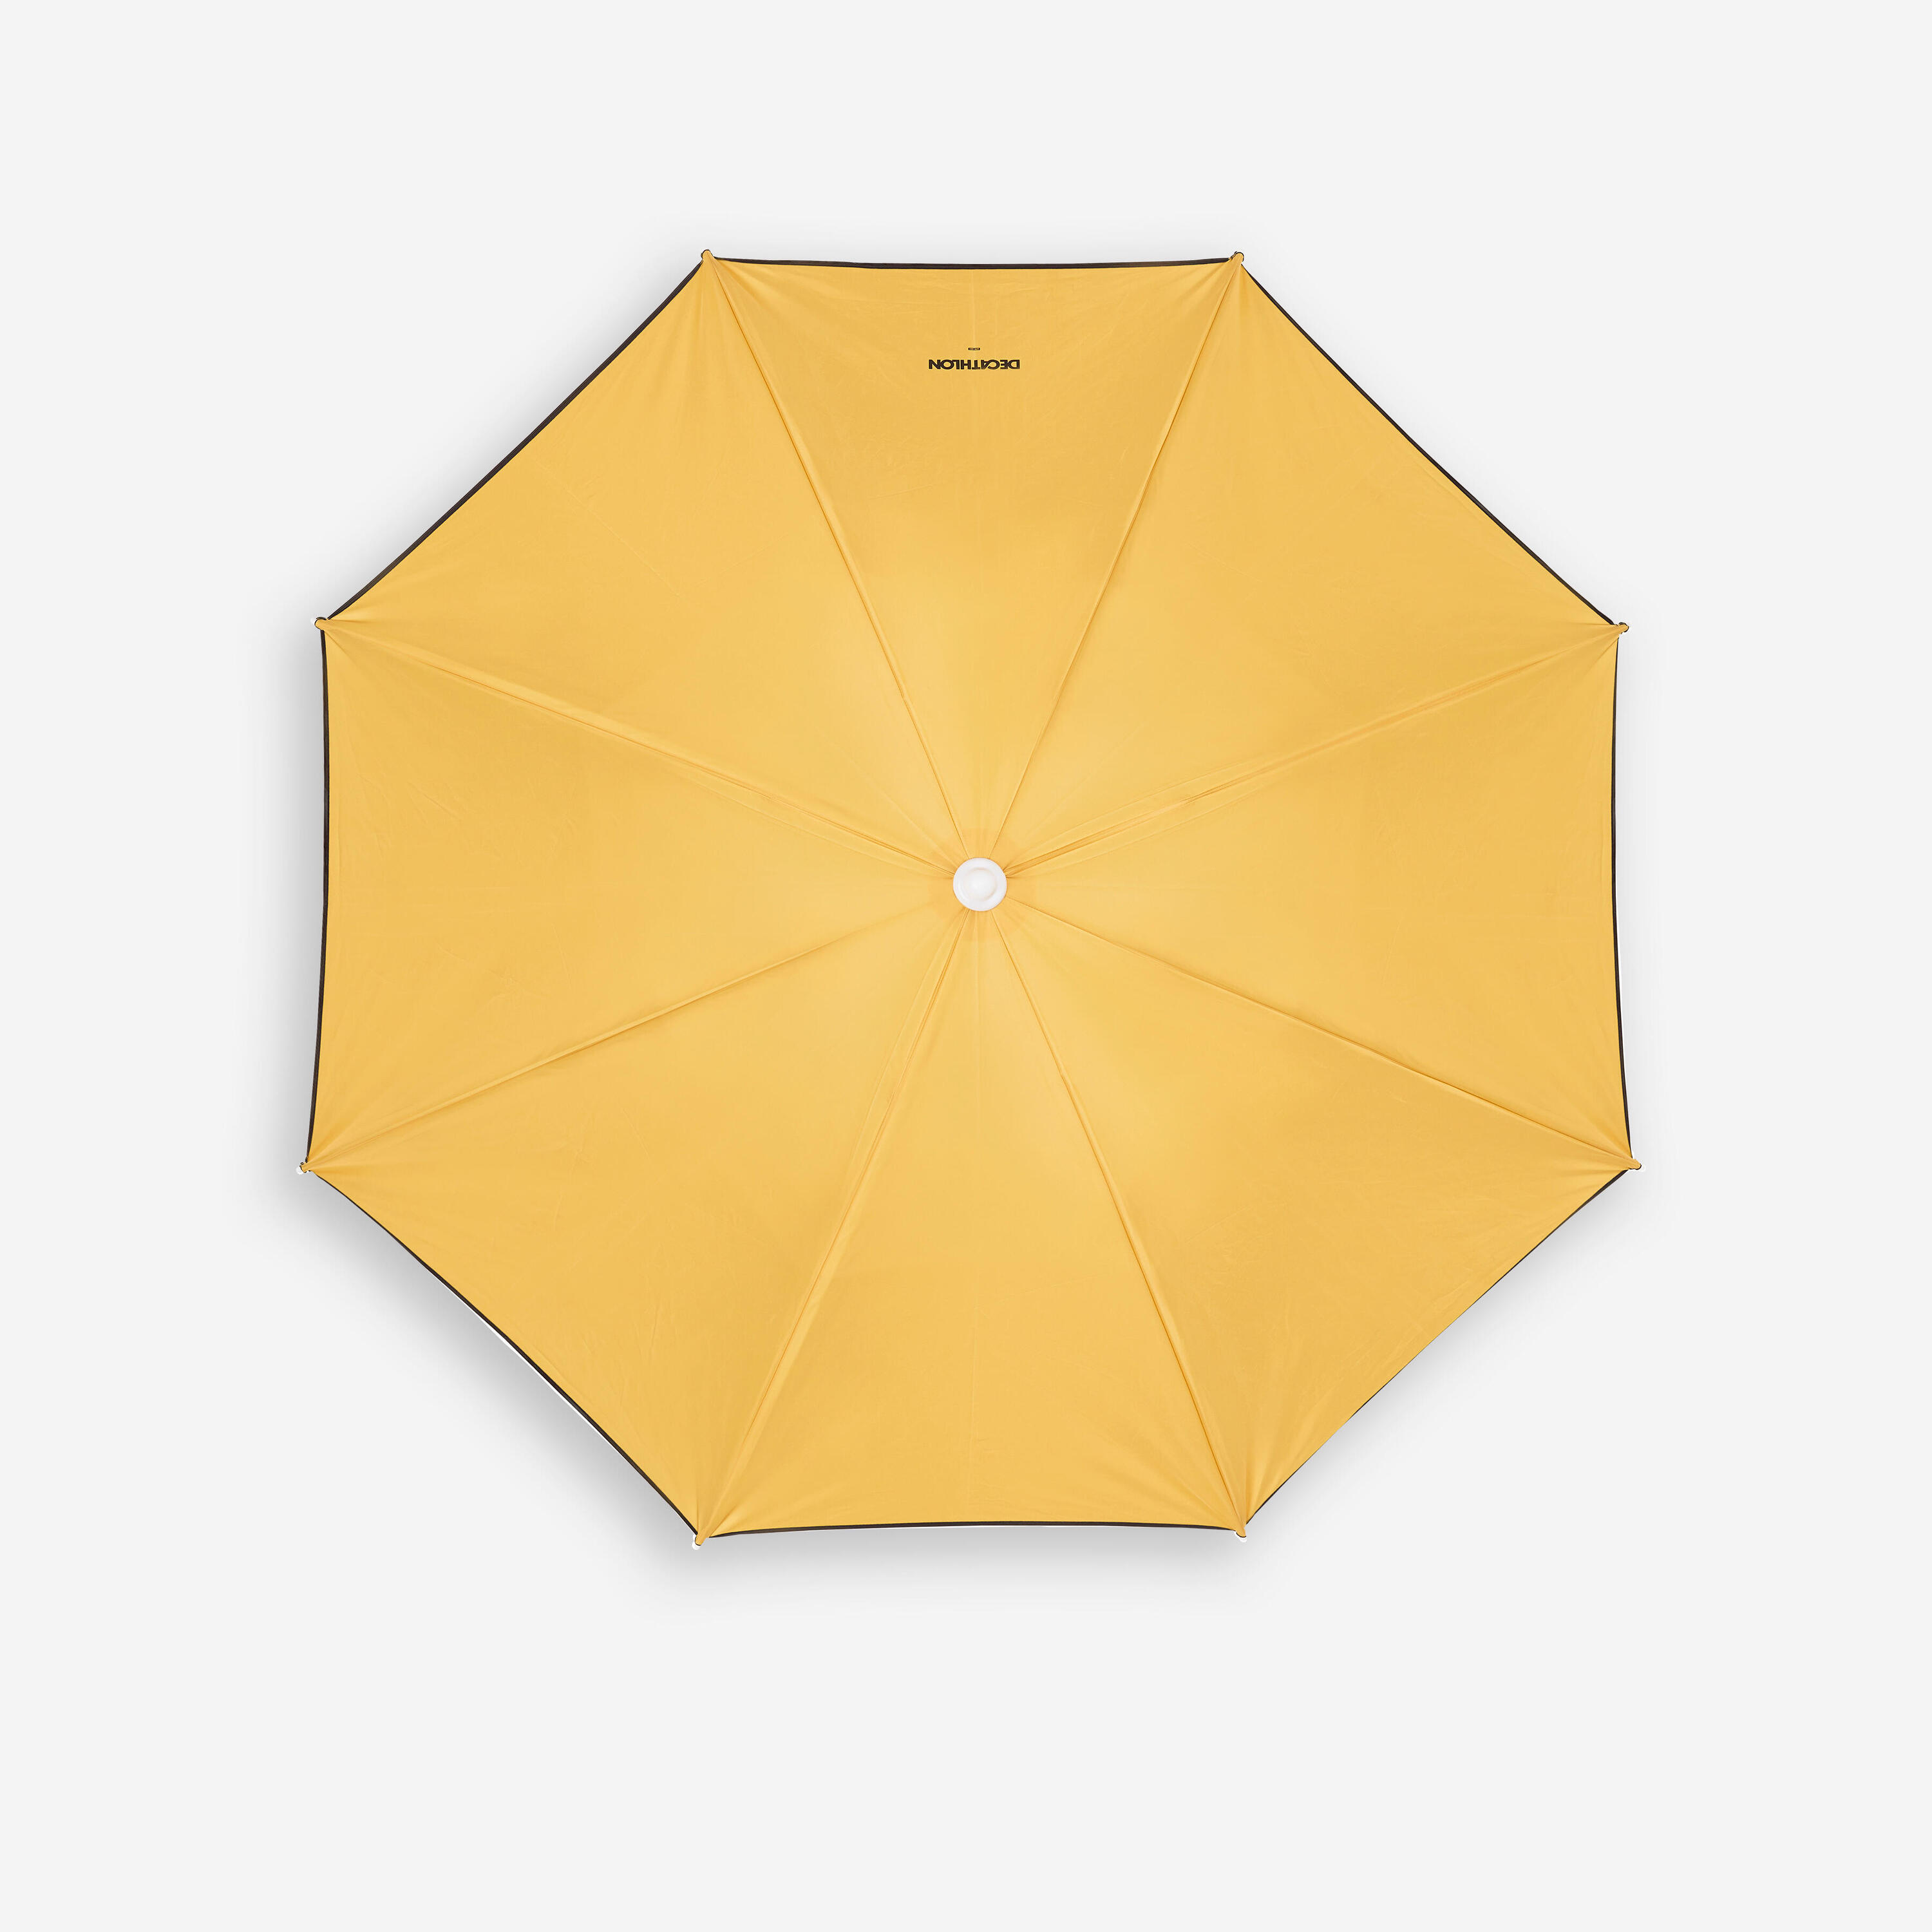 Compact beach umbrella 2 person UPF 50+ - Paruv 160 yellow ochre 4/8